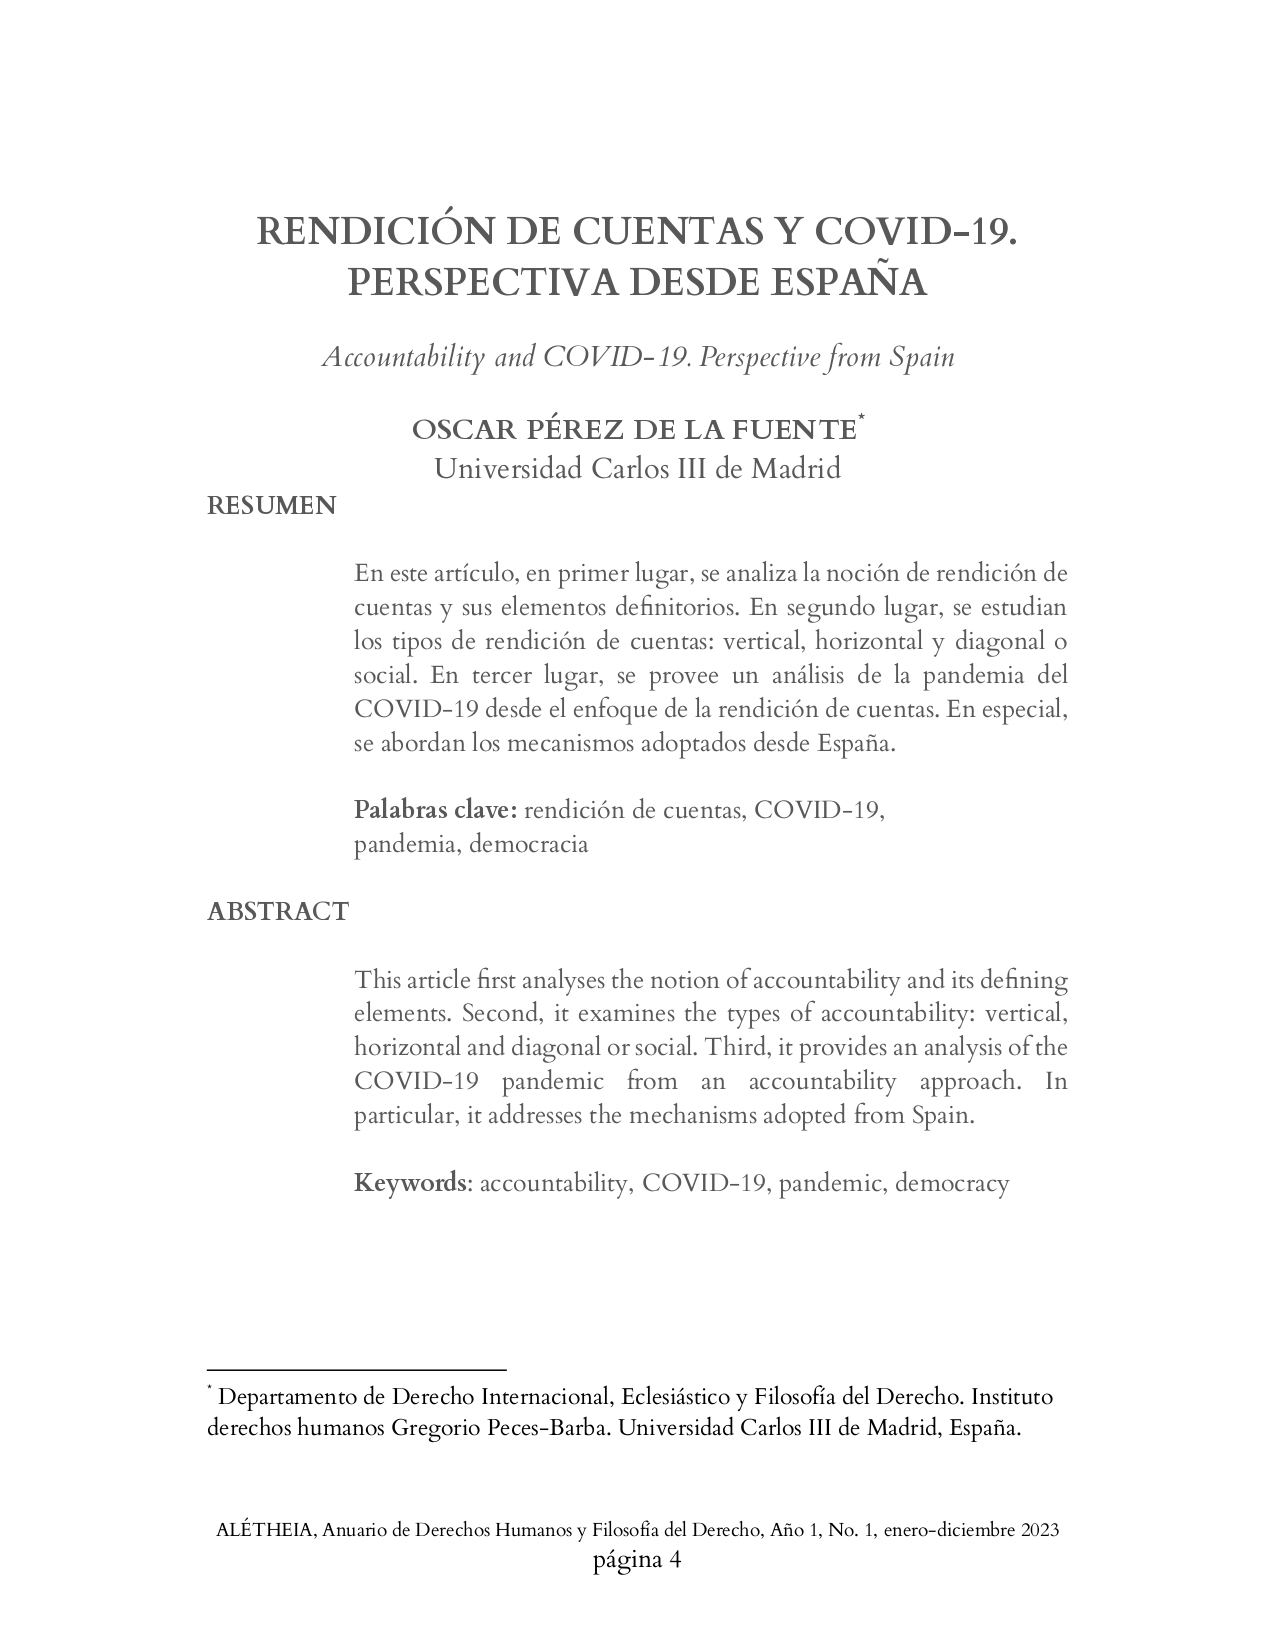 RENDICIÓN DE CUENTAS Y COVID-19. PERSPECTIVA DESDE ESPAÑA